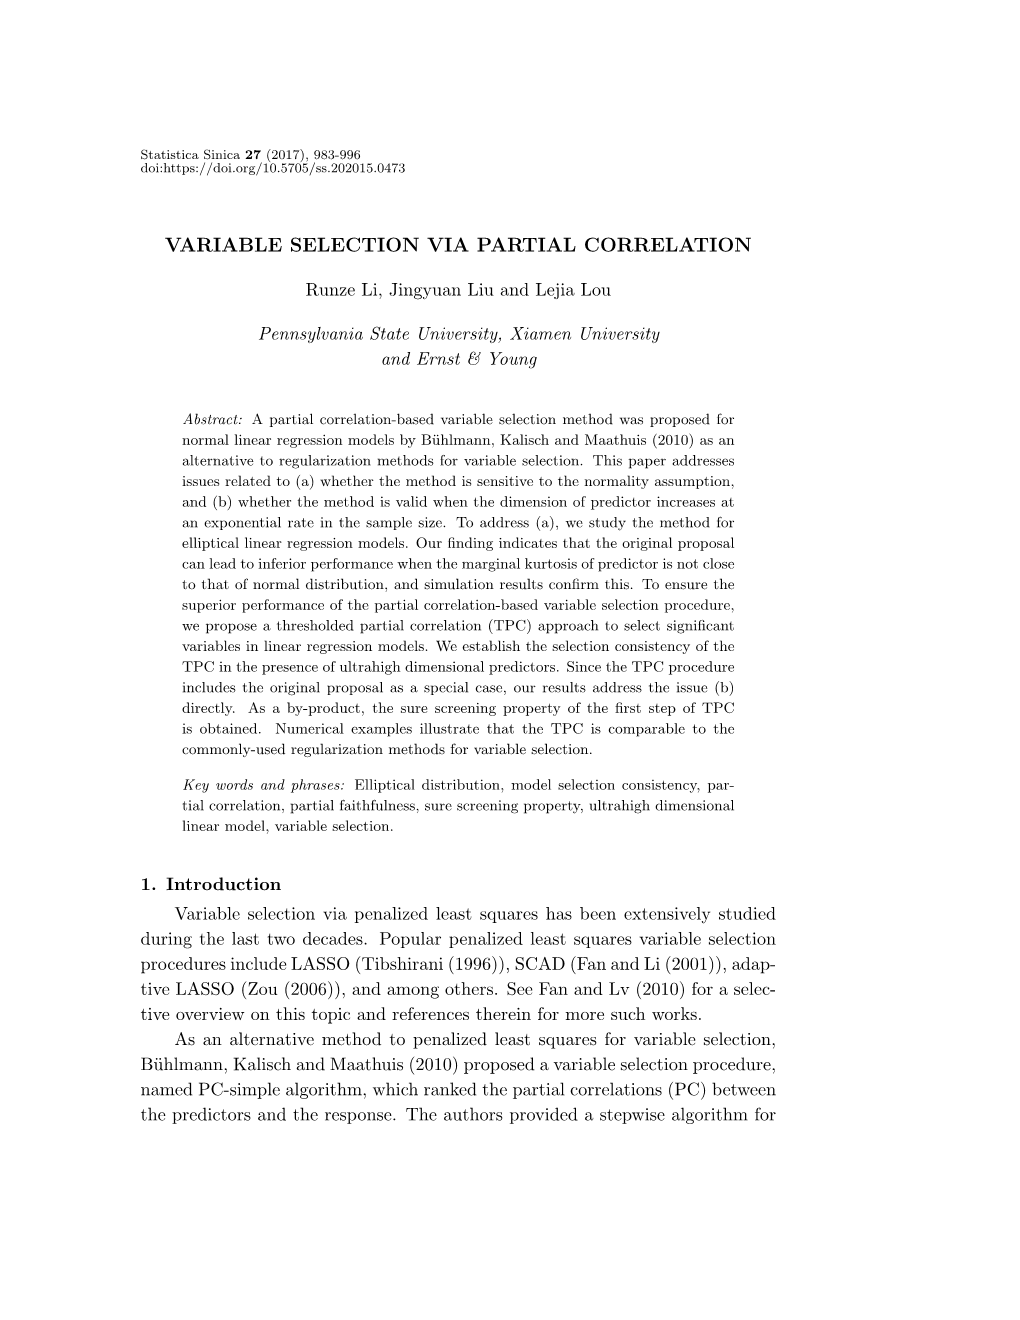 Variable Selection Via Partial Correlation